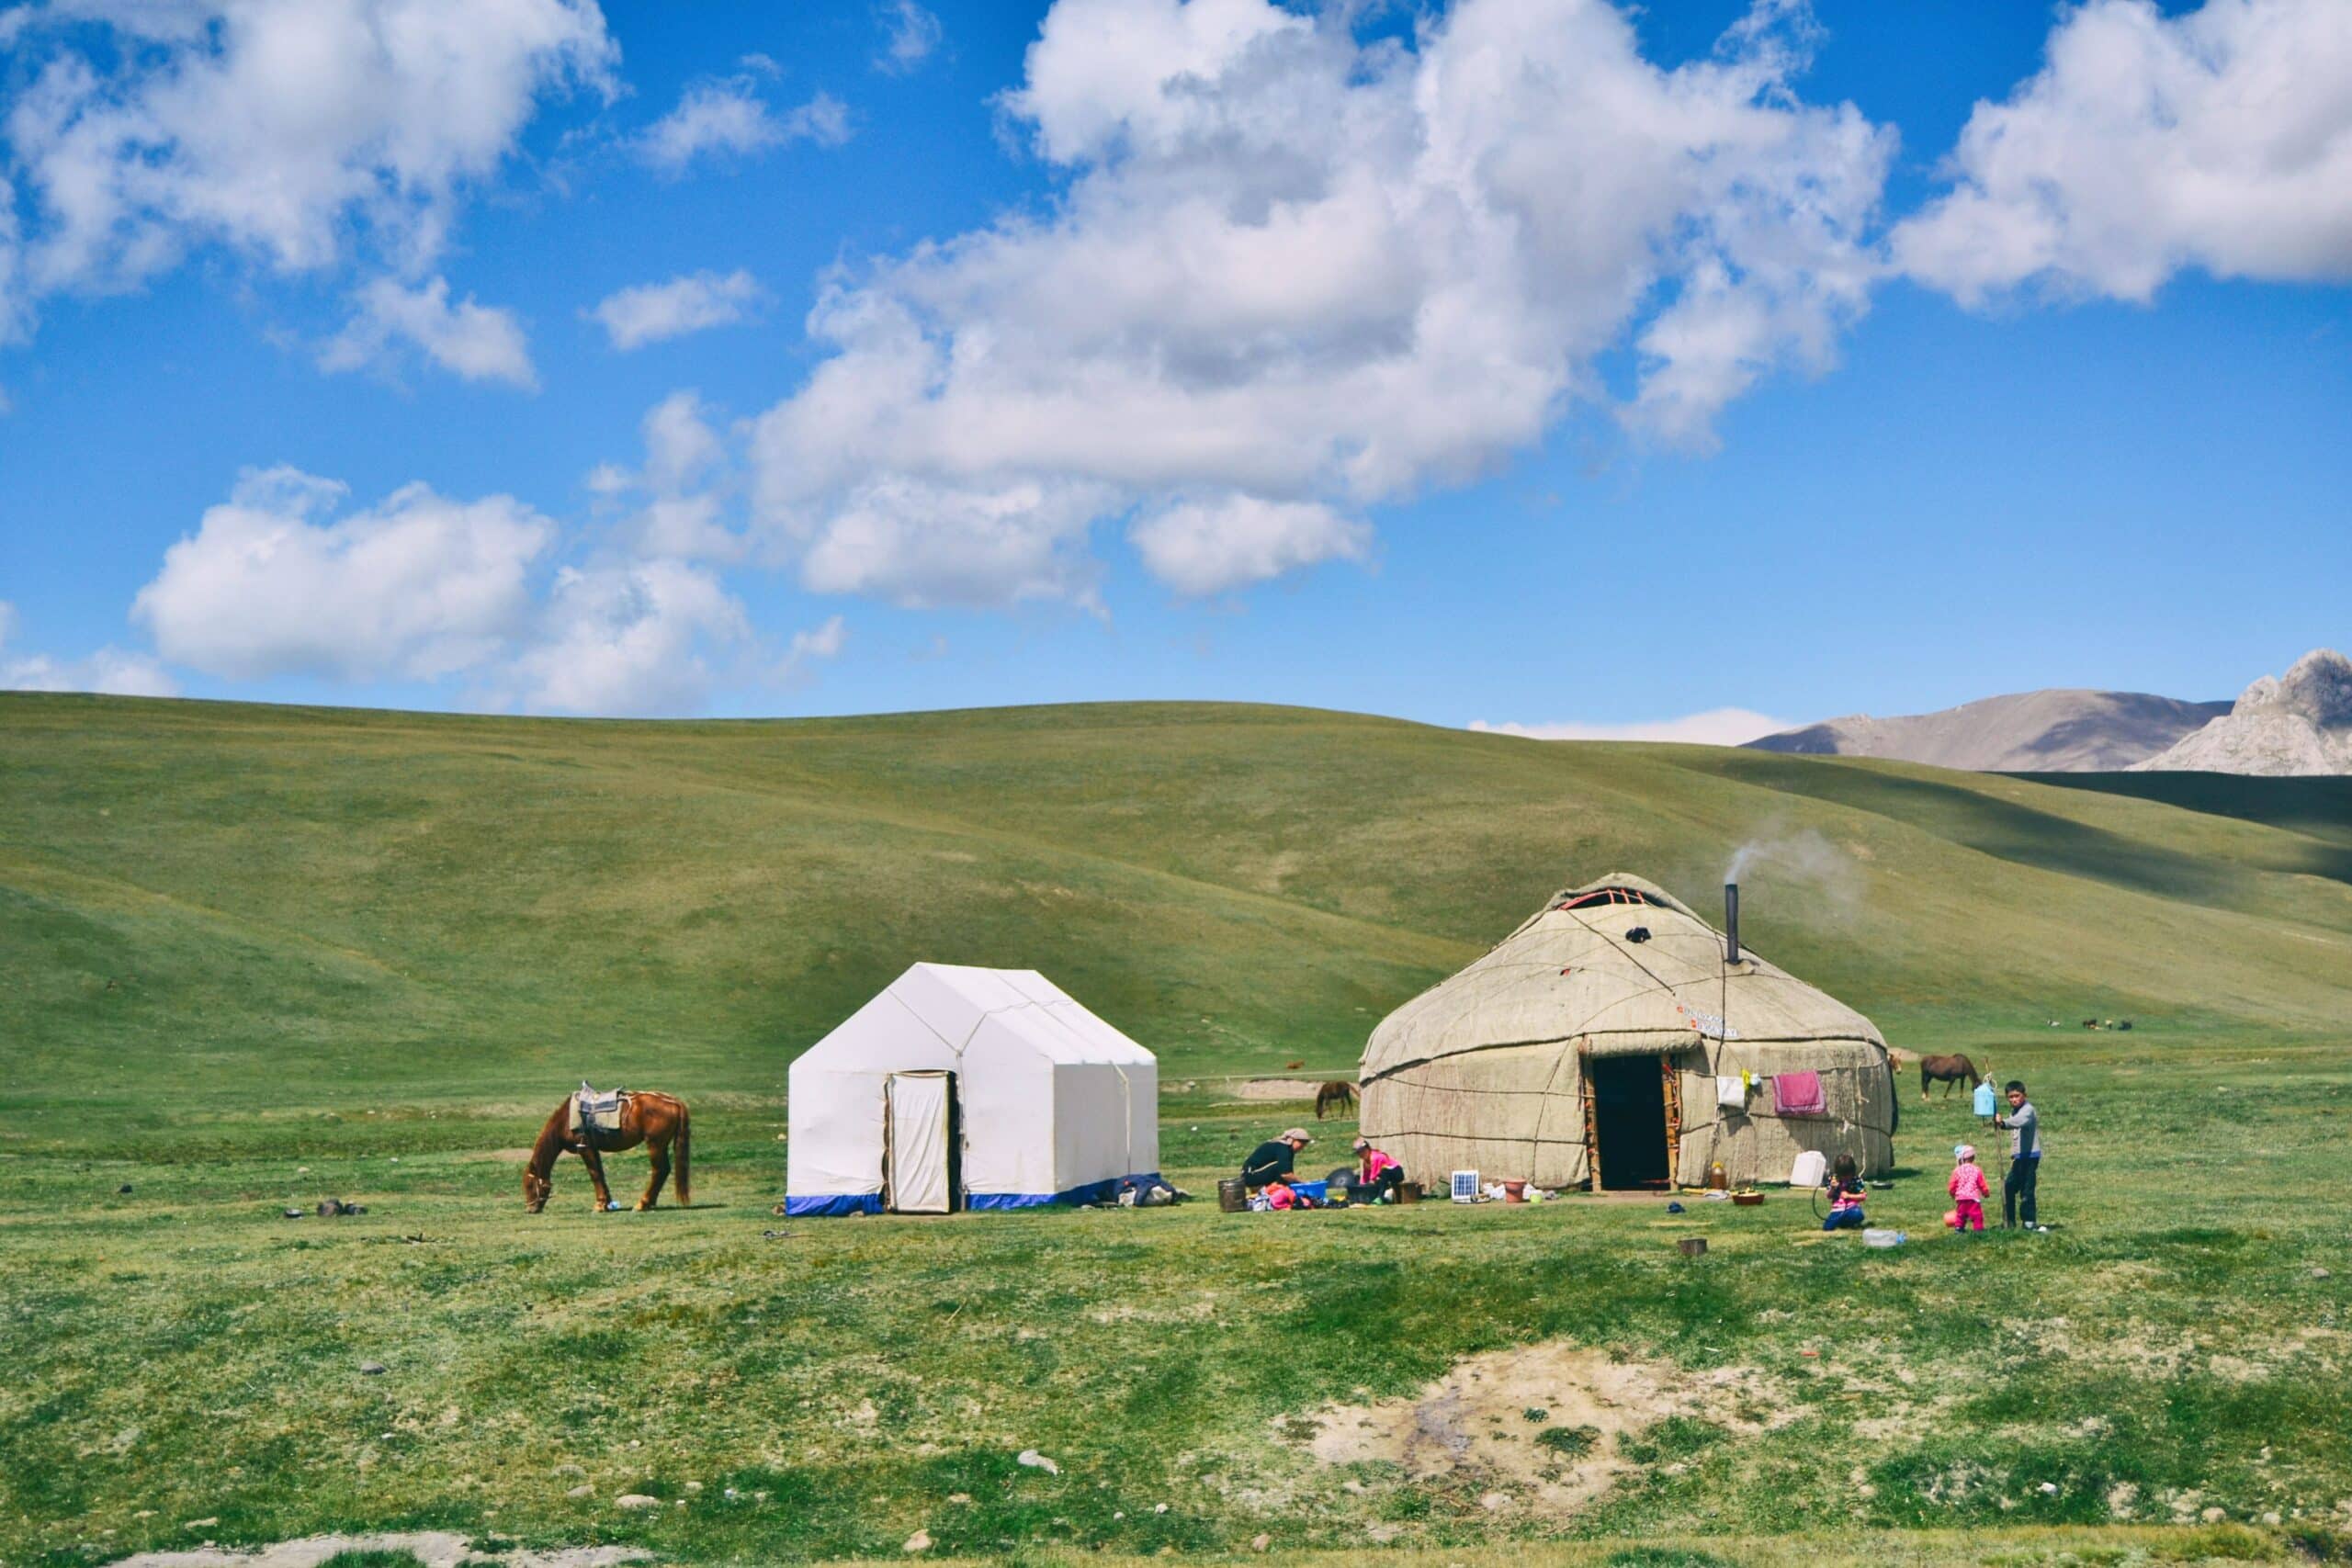 Vista de duas tendas em Song-Kul, Quirguistão, no meio das montanhas verdes durante o dia, com um cavalo no pasto e uma família a frente das tendas.